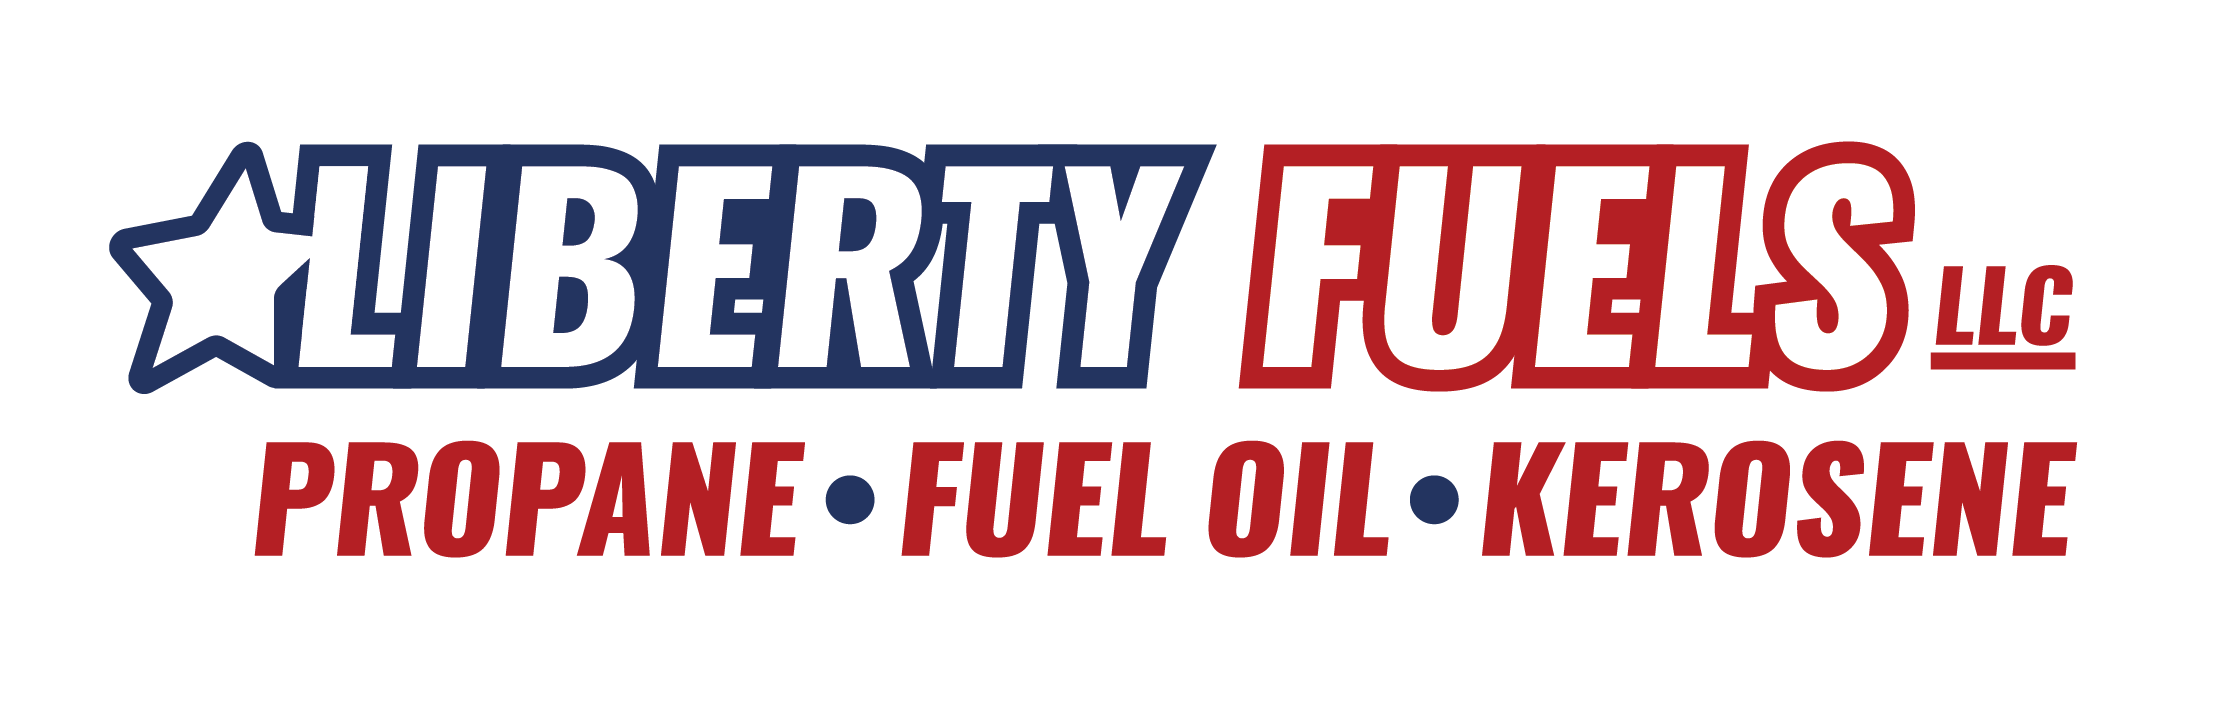 Liberty Fuels